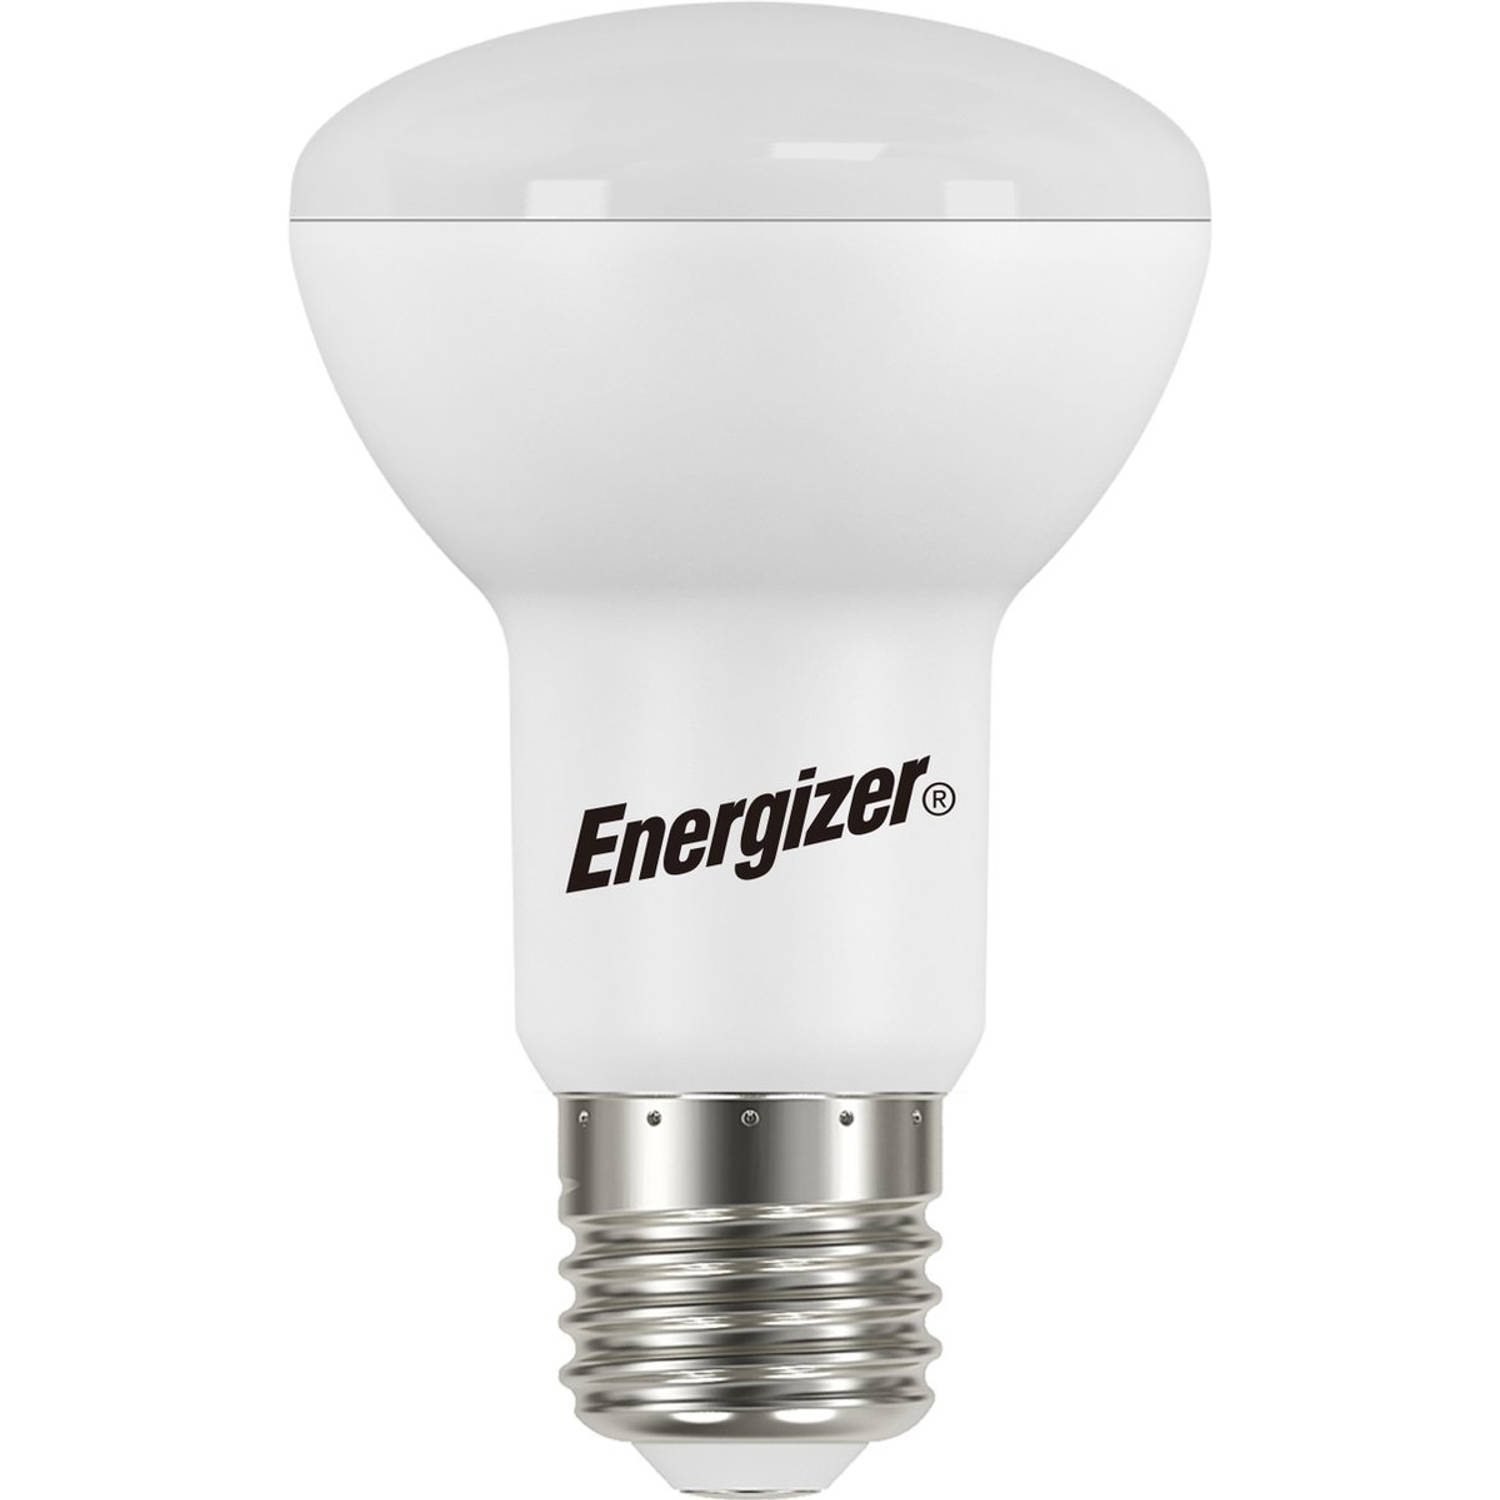 Energizer energiezuinige Led lamp R63 E27 7 Watt warmwit licht niet dimbaar 5 stuks